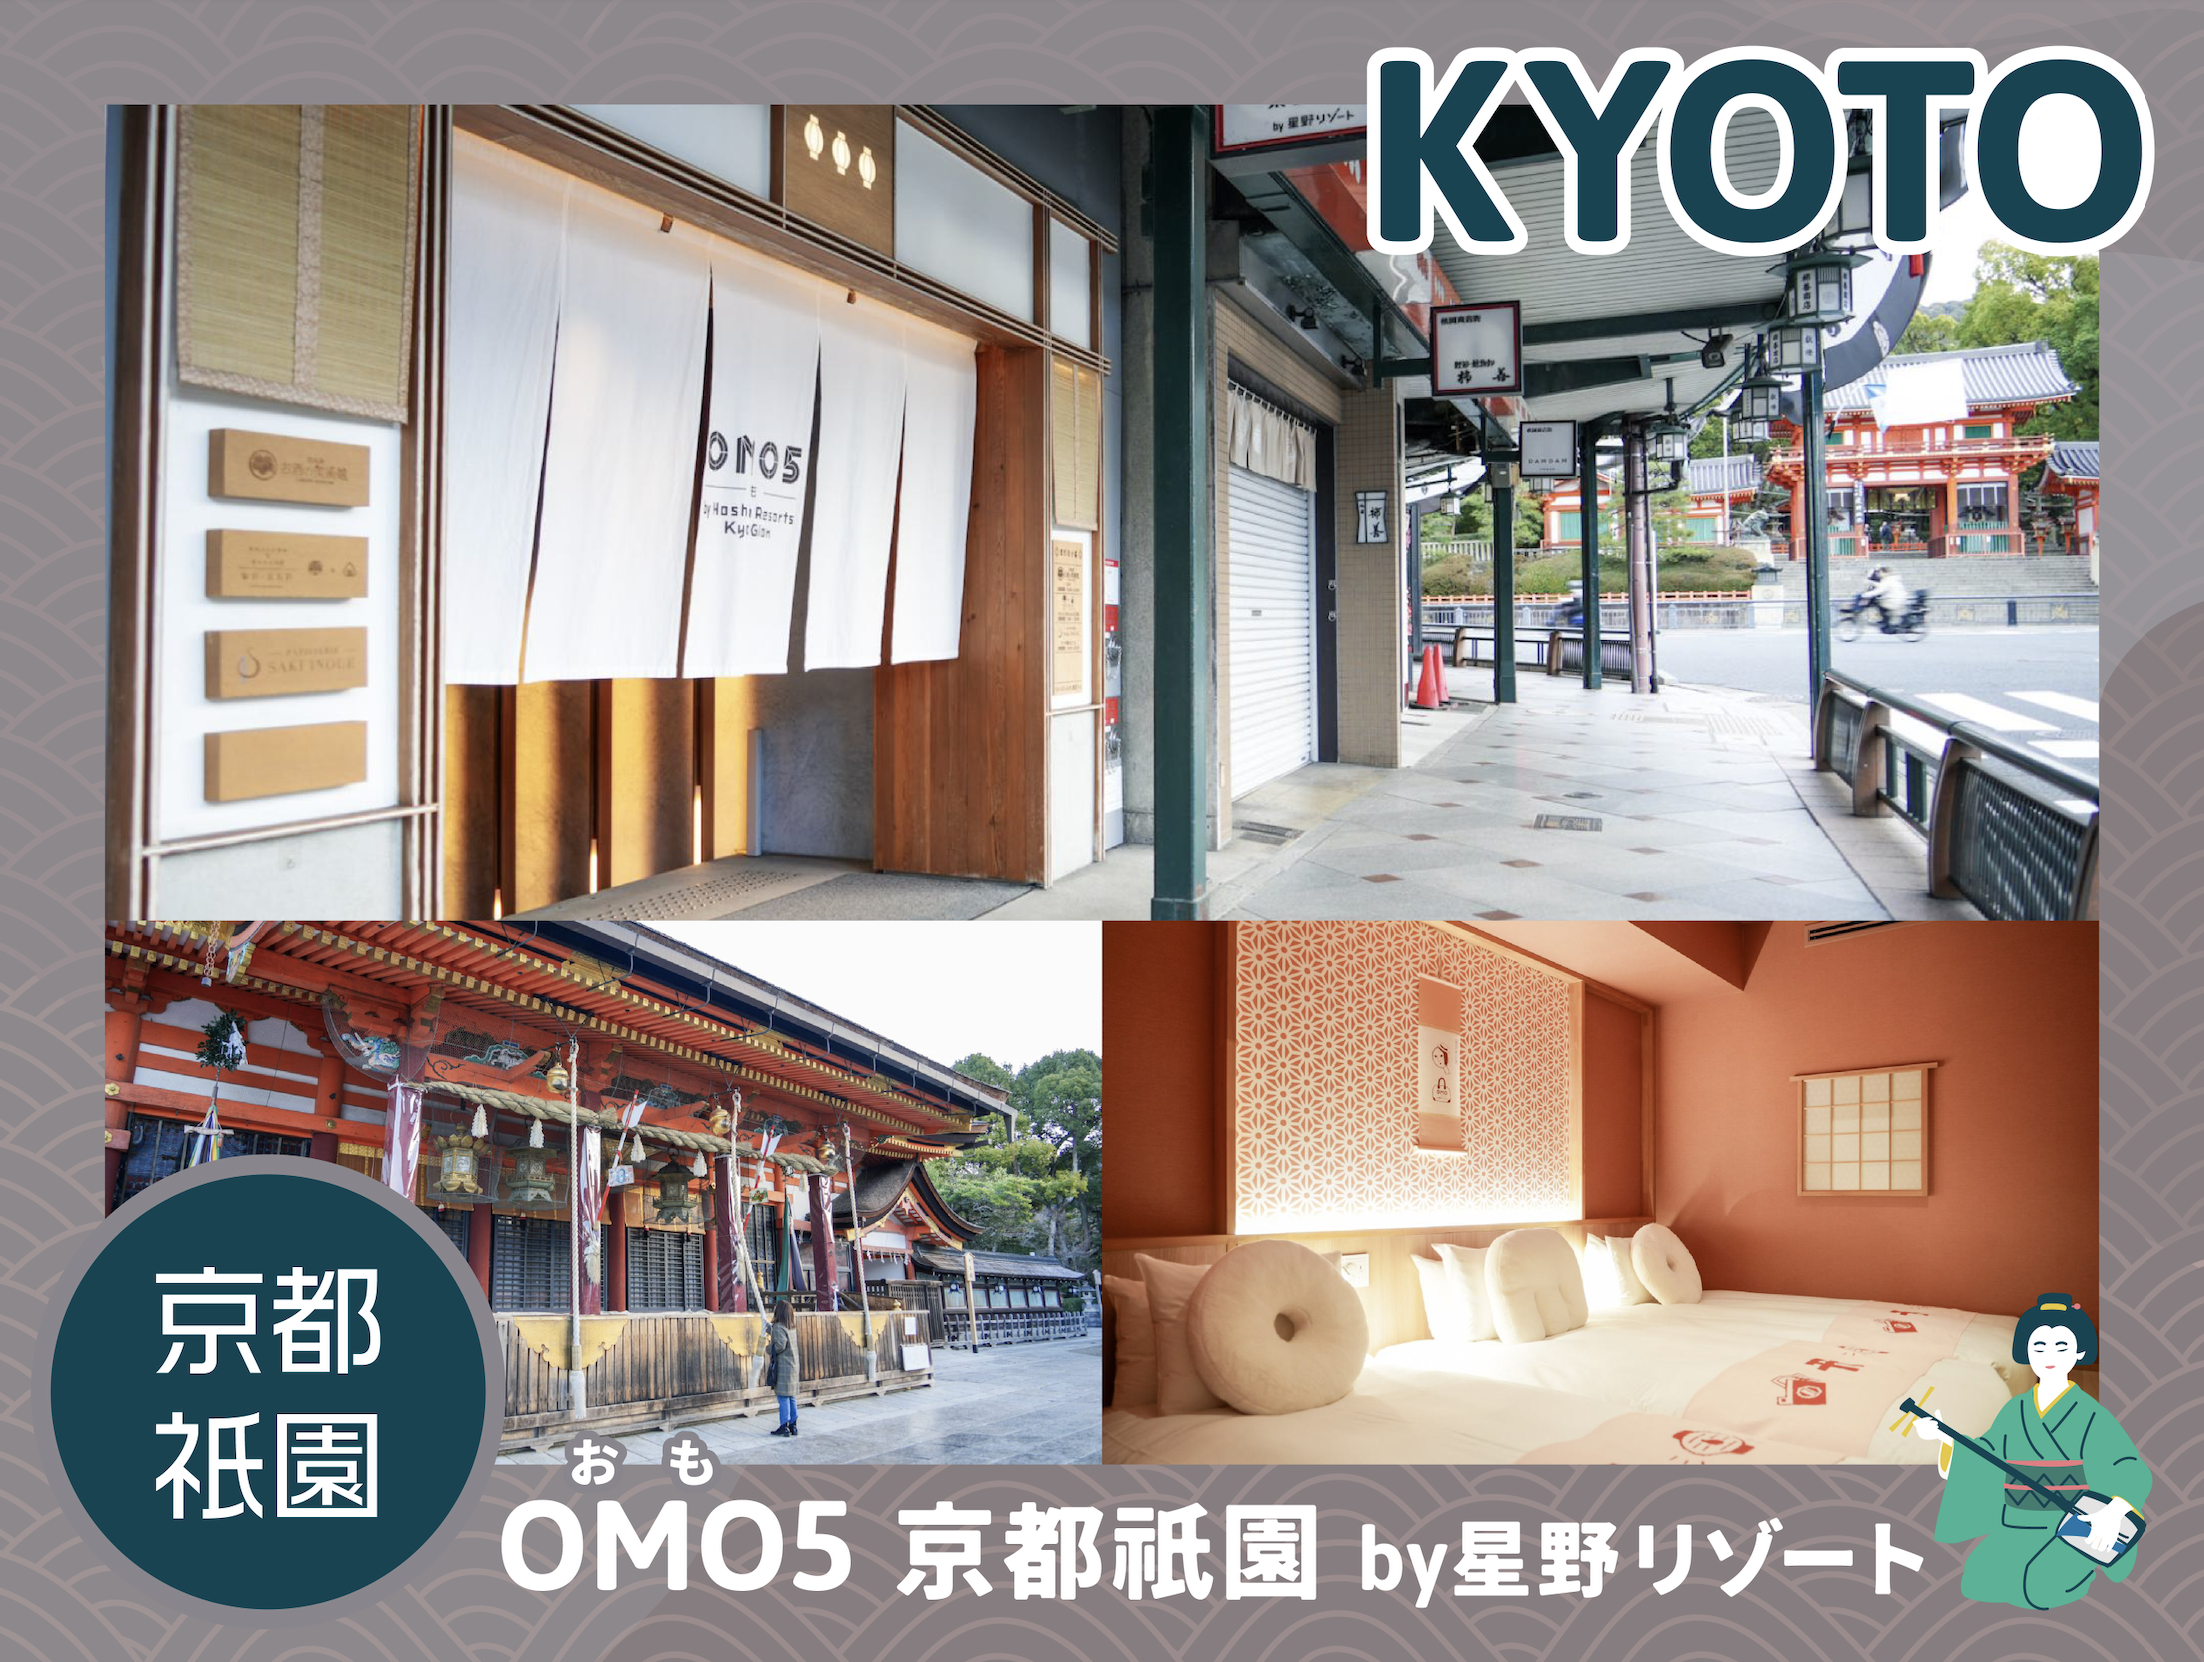 【1日1室限定】「OMO5京都祇園」のよーじやべっぴんルームに泊まってみました。